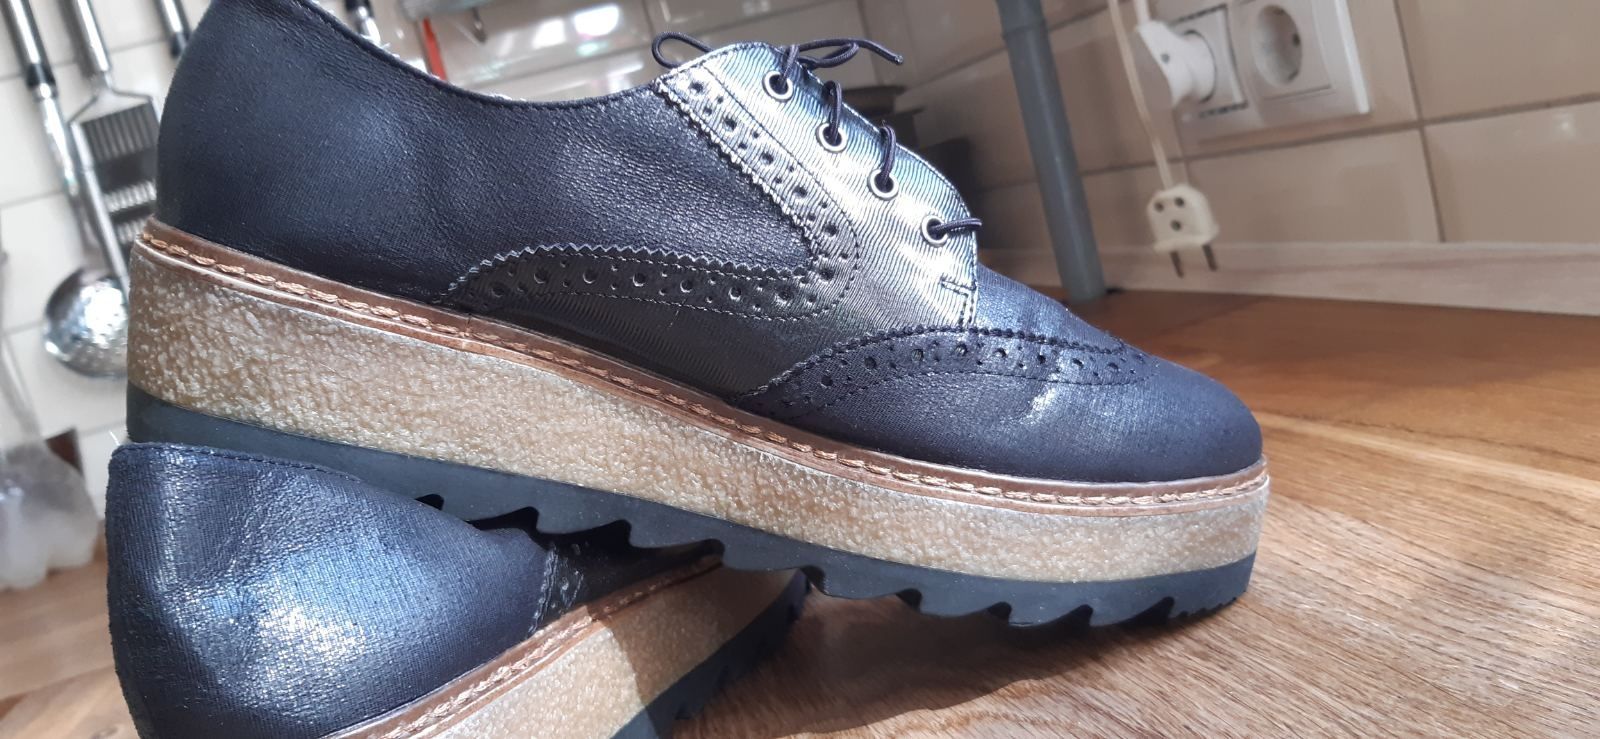 Продам женские туфли Tamaris
Немецкого производителя Р-40